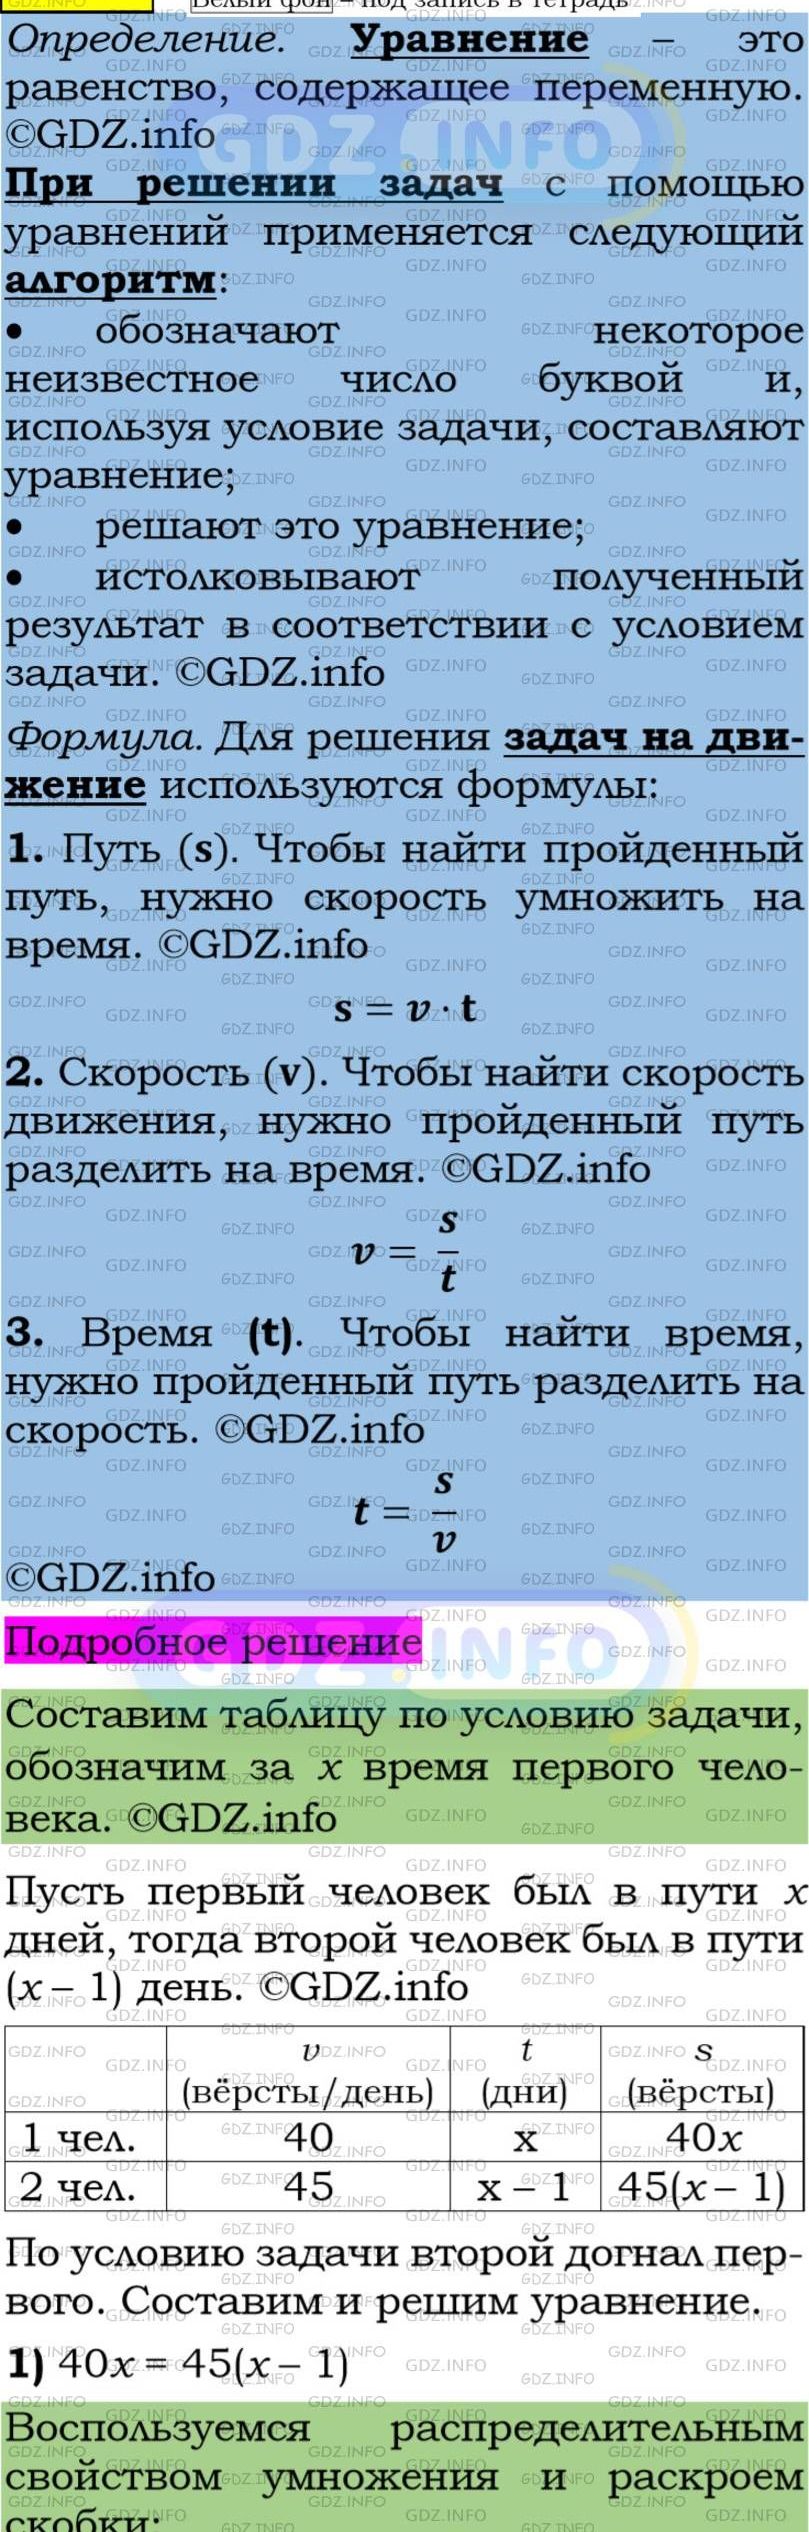 Фото подробного решения: Номер задания №177 из ГДЗ по Алгебре 7 класс: Макарычев Ю.Н.